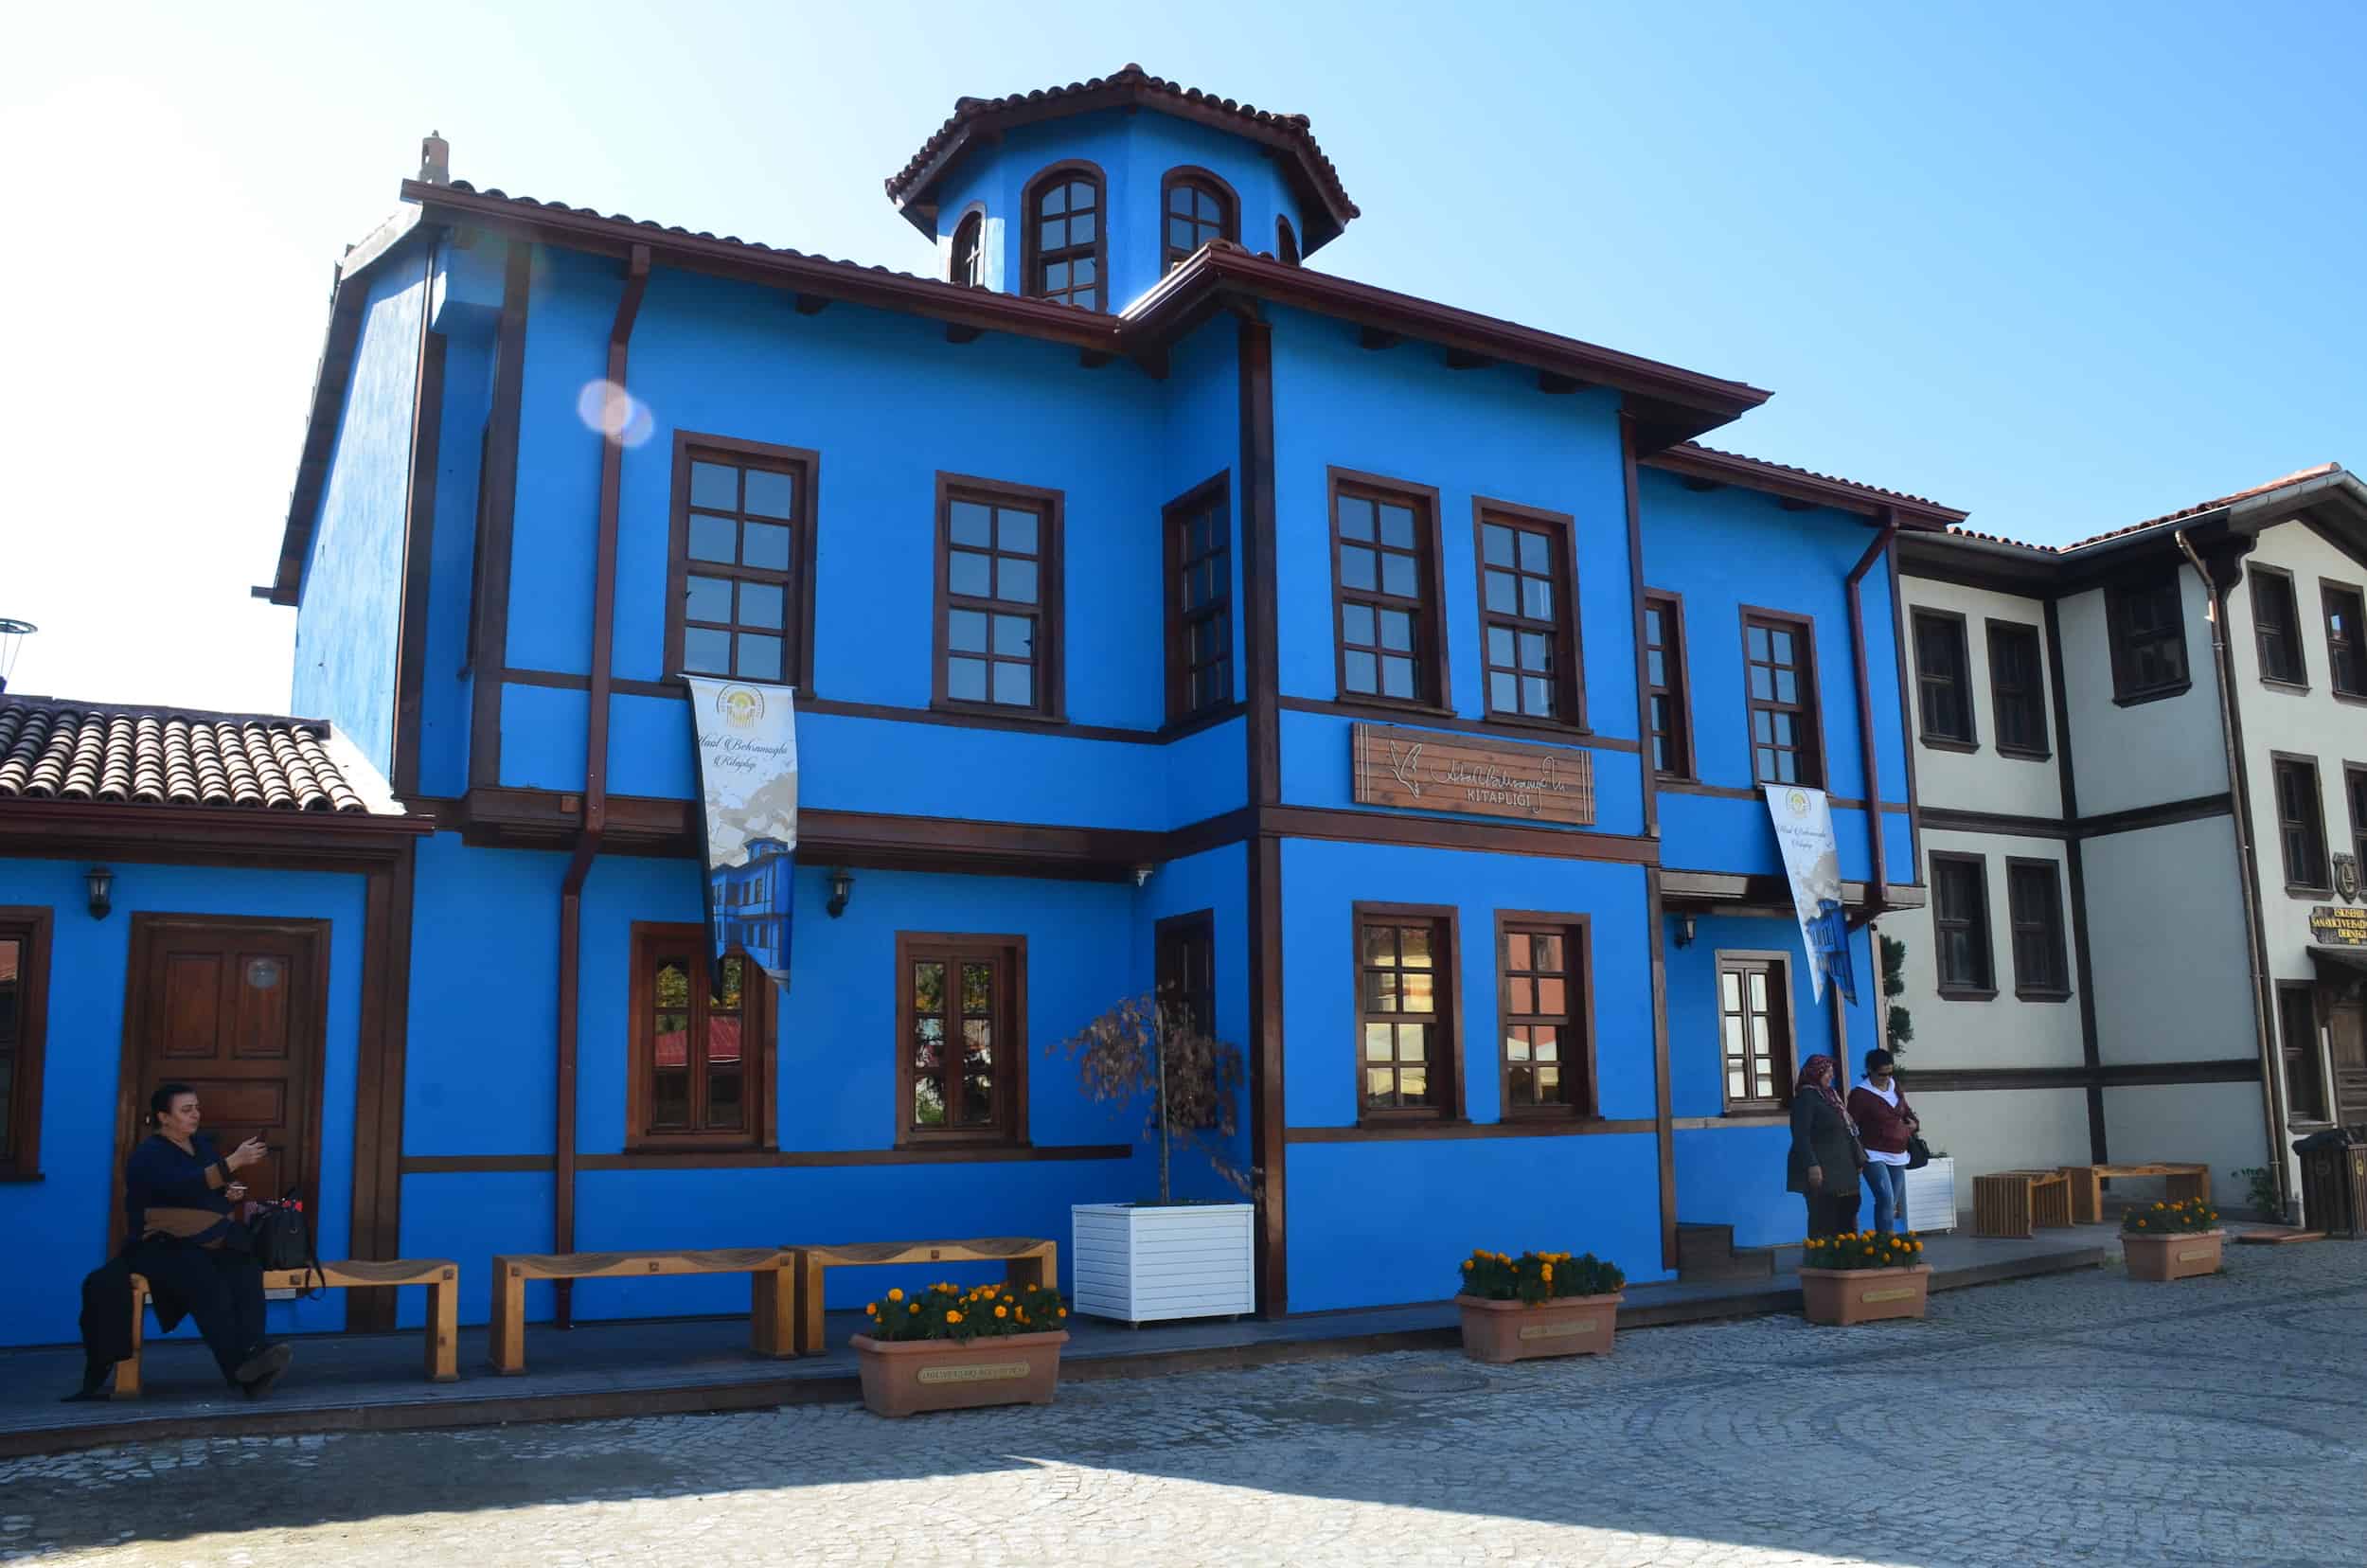 Yağcızade Mansion in Odunpazarı, Eskişehir, Turkey